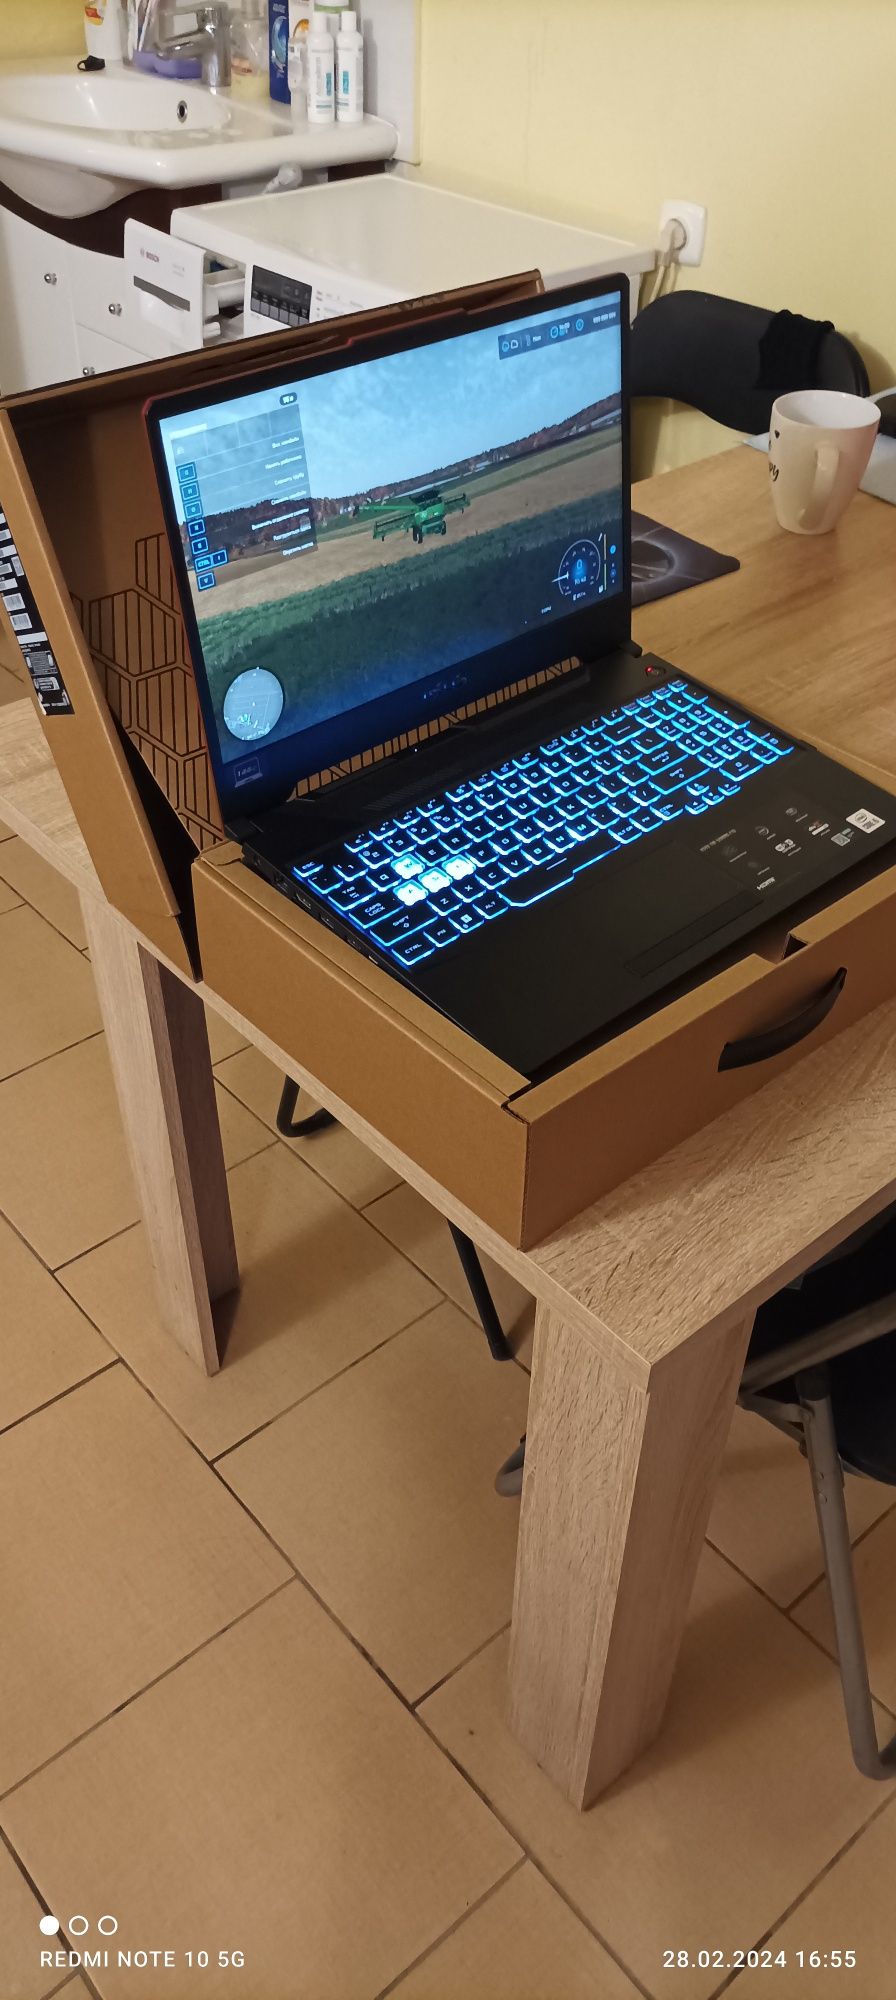 Laptop ASUS TUF Gaming F15